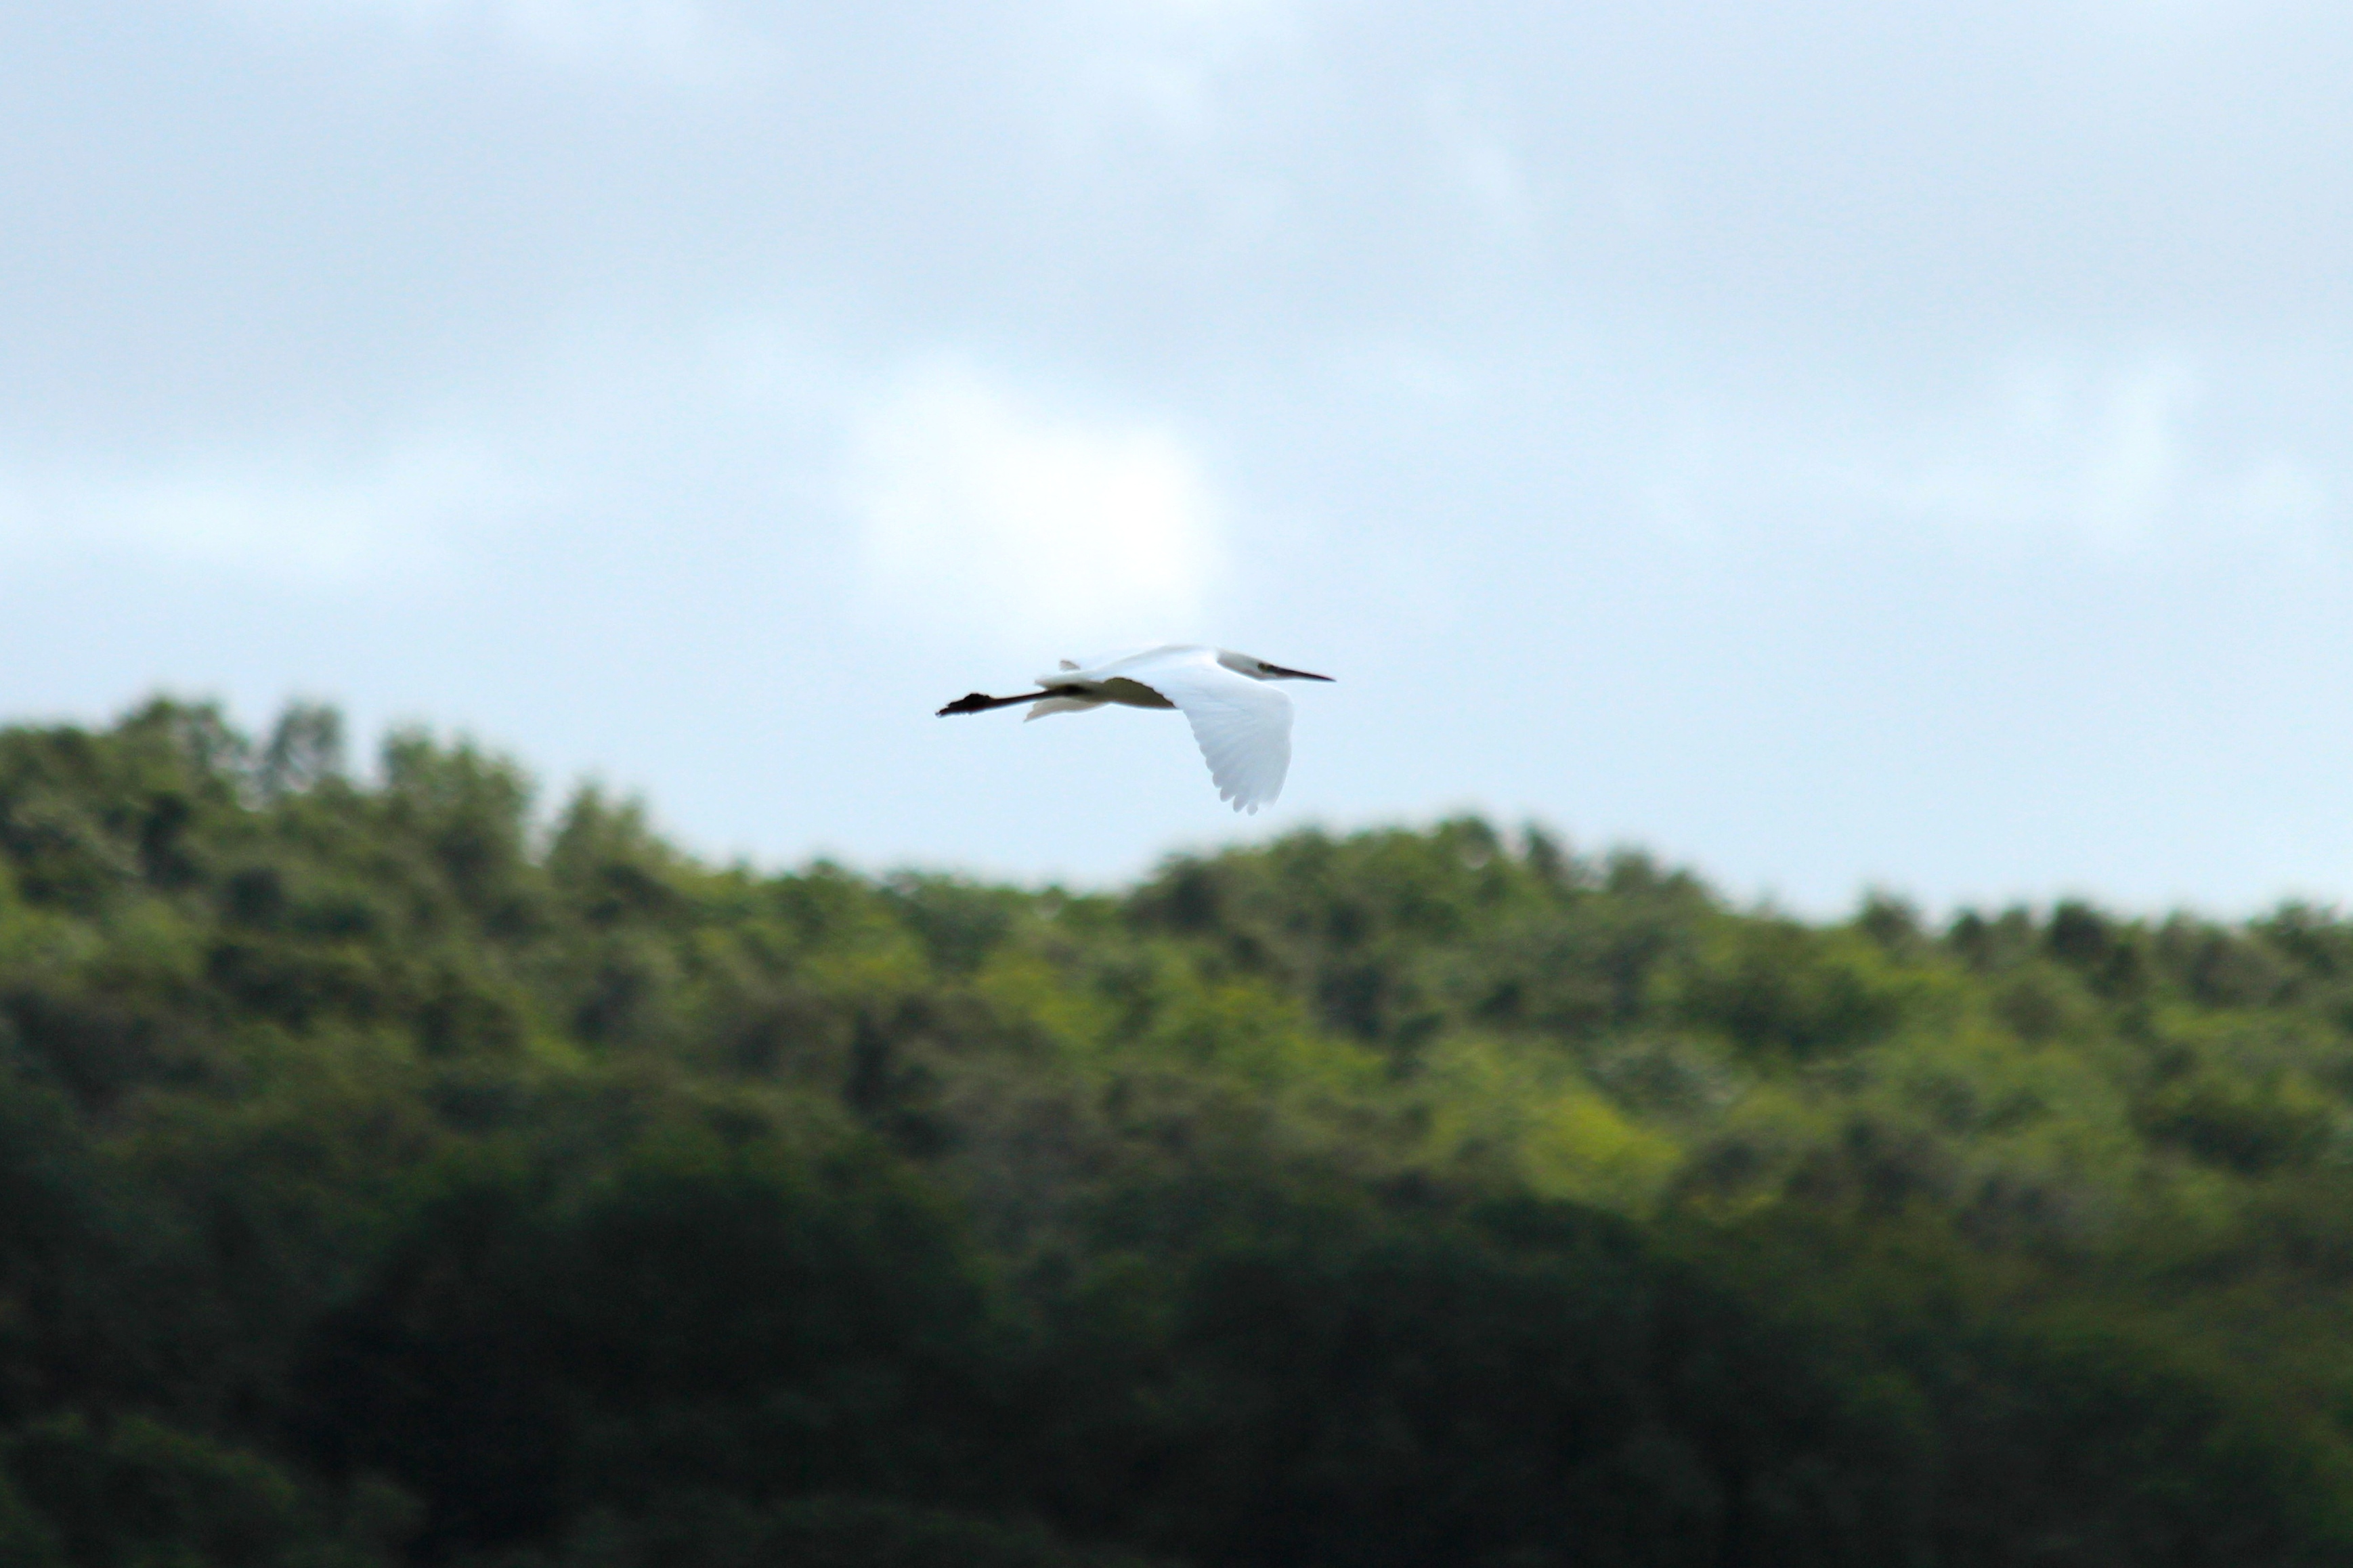 Little Egret In Flight